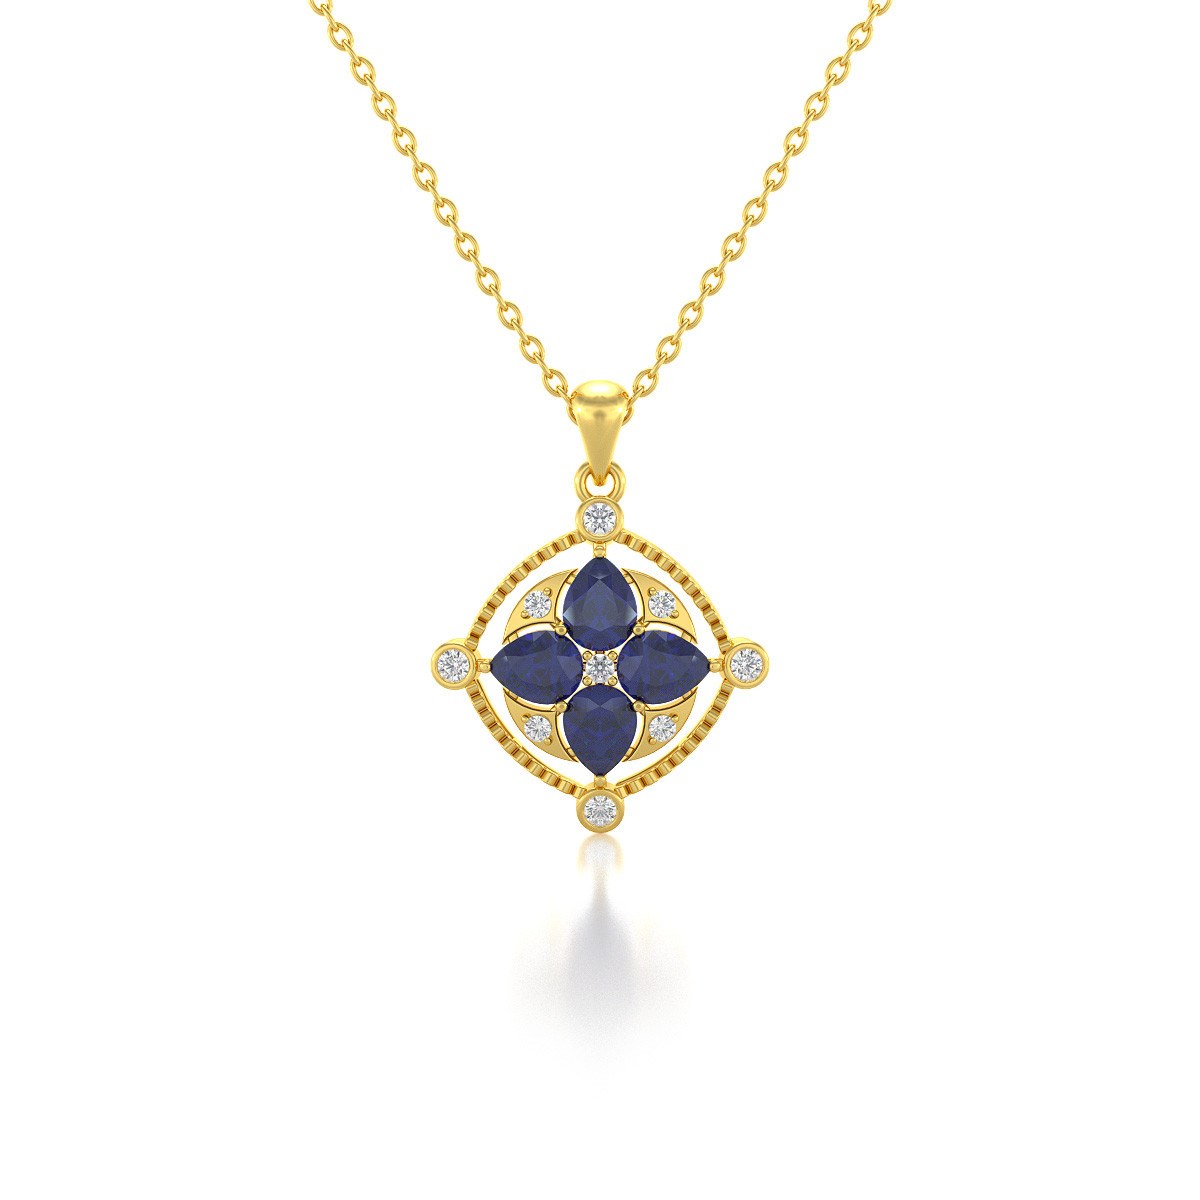 Collier Médaillon Saphir & Diamants en Or Jaune - Cadeau Anniversaire | Aden